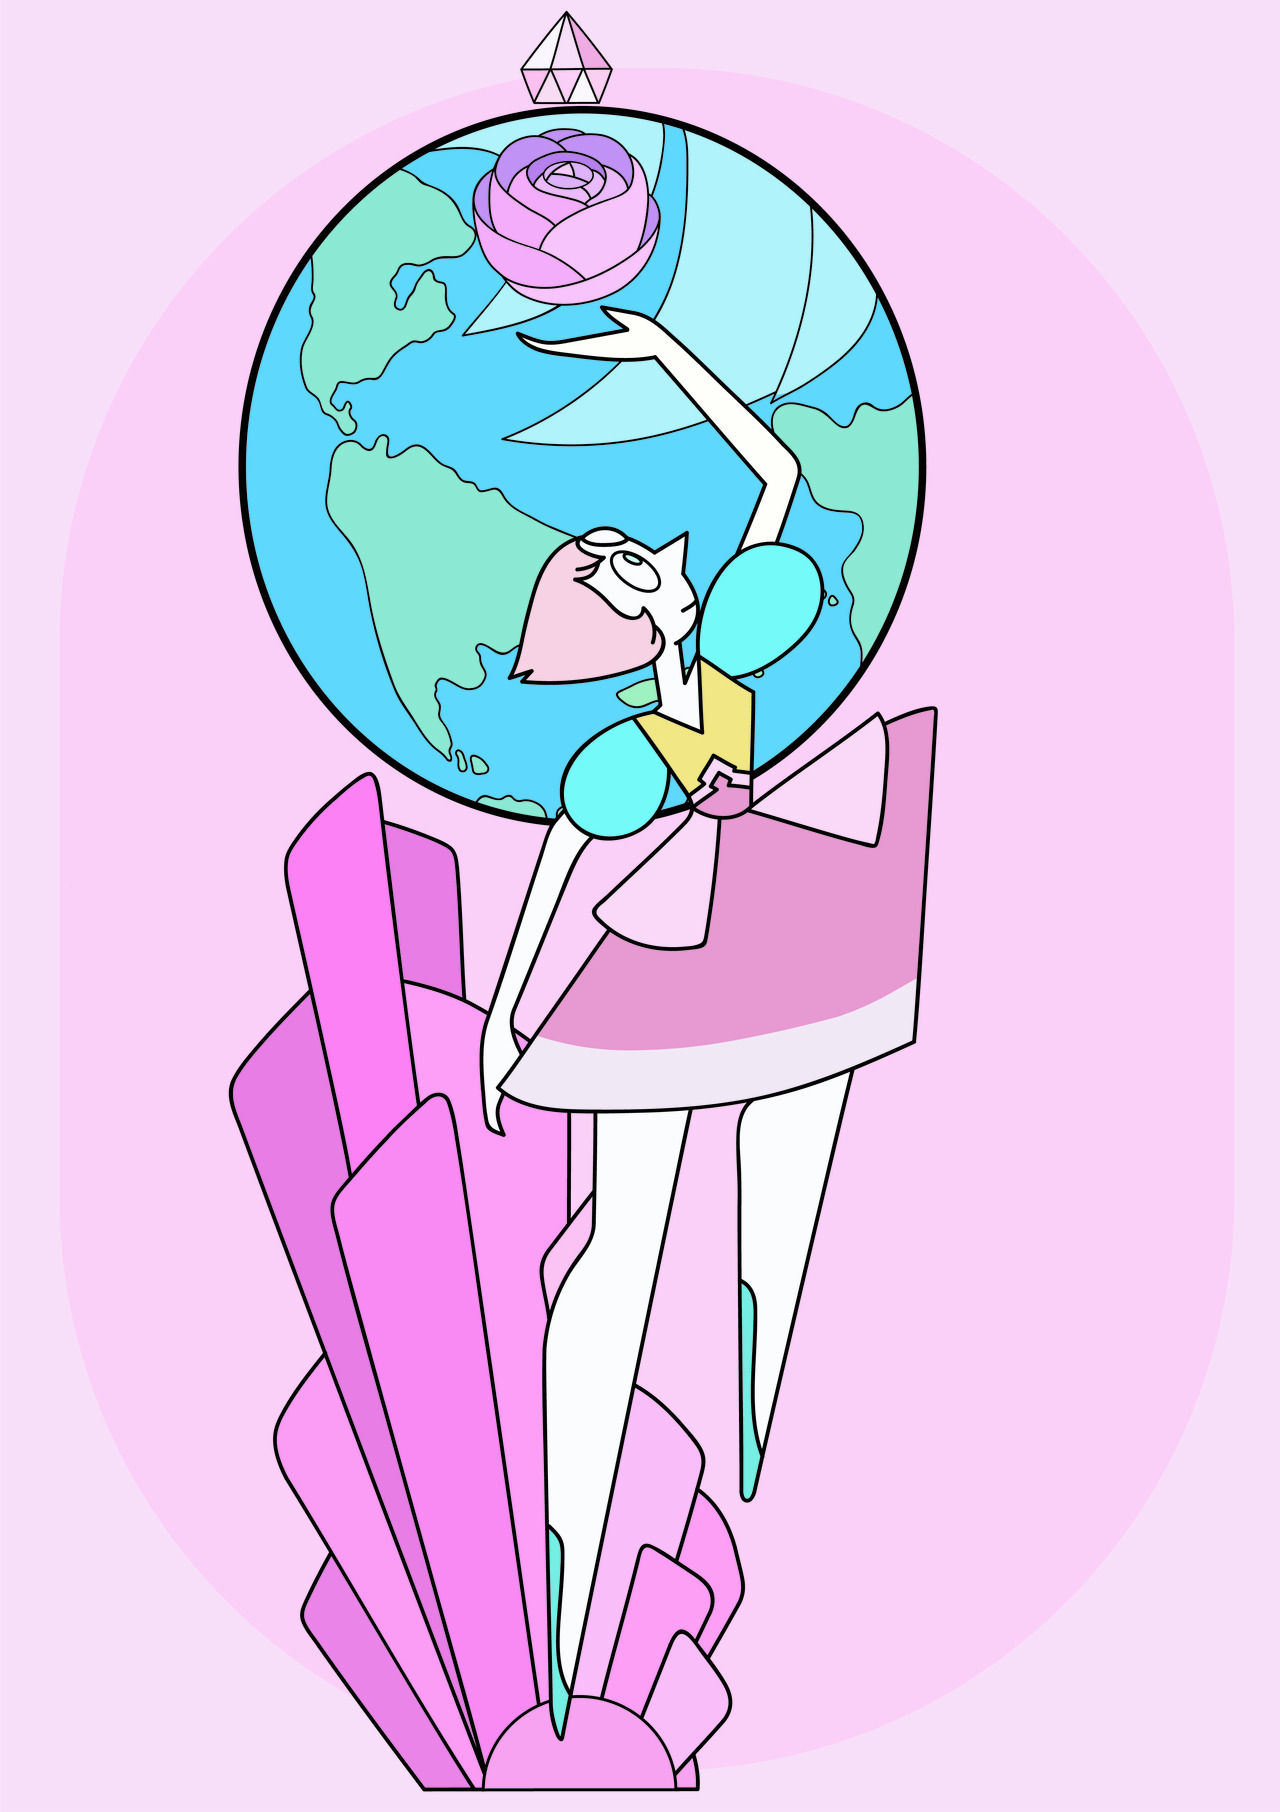 I love Pearl